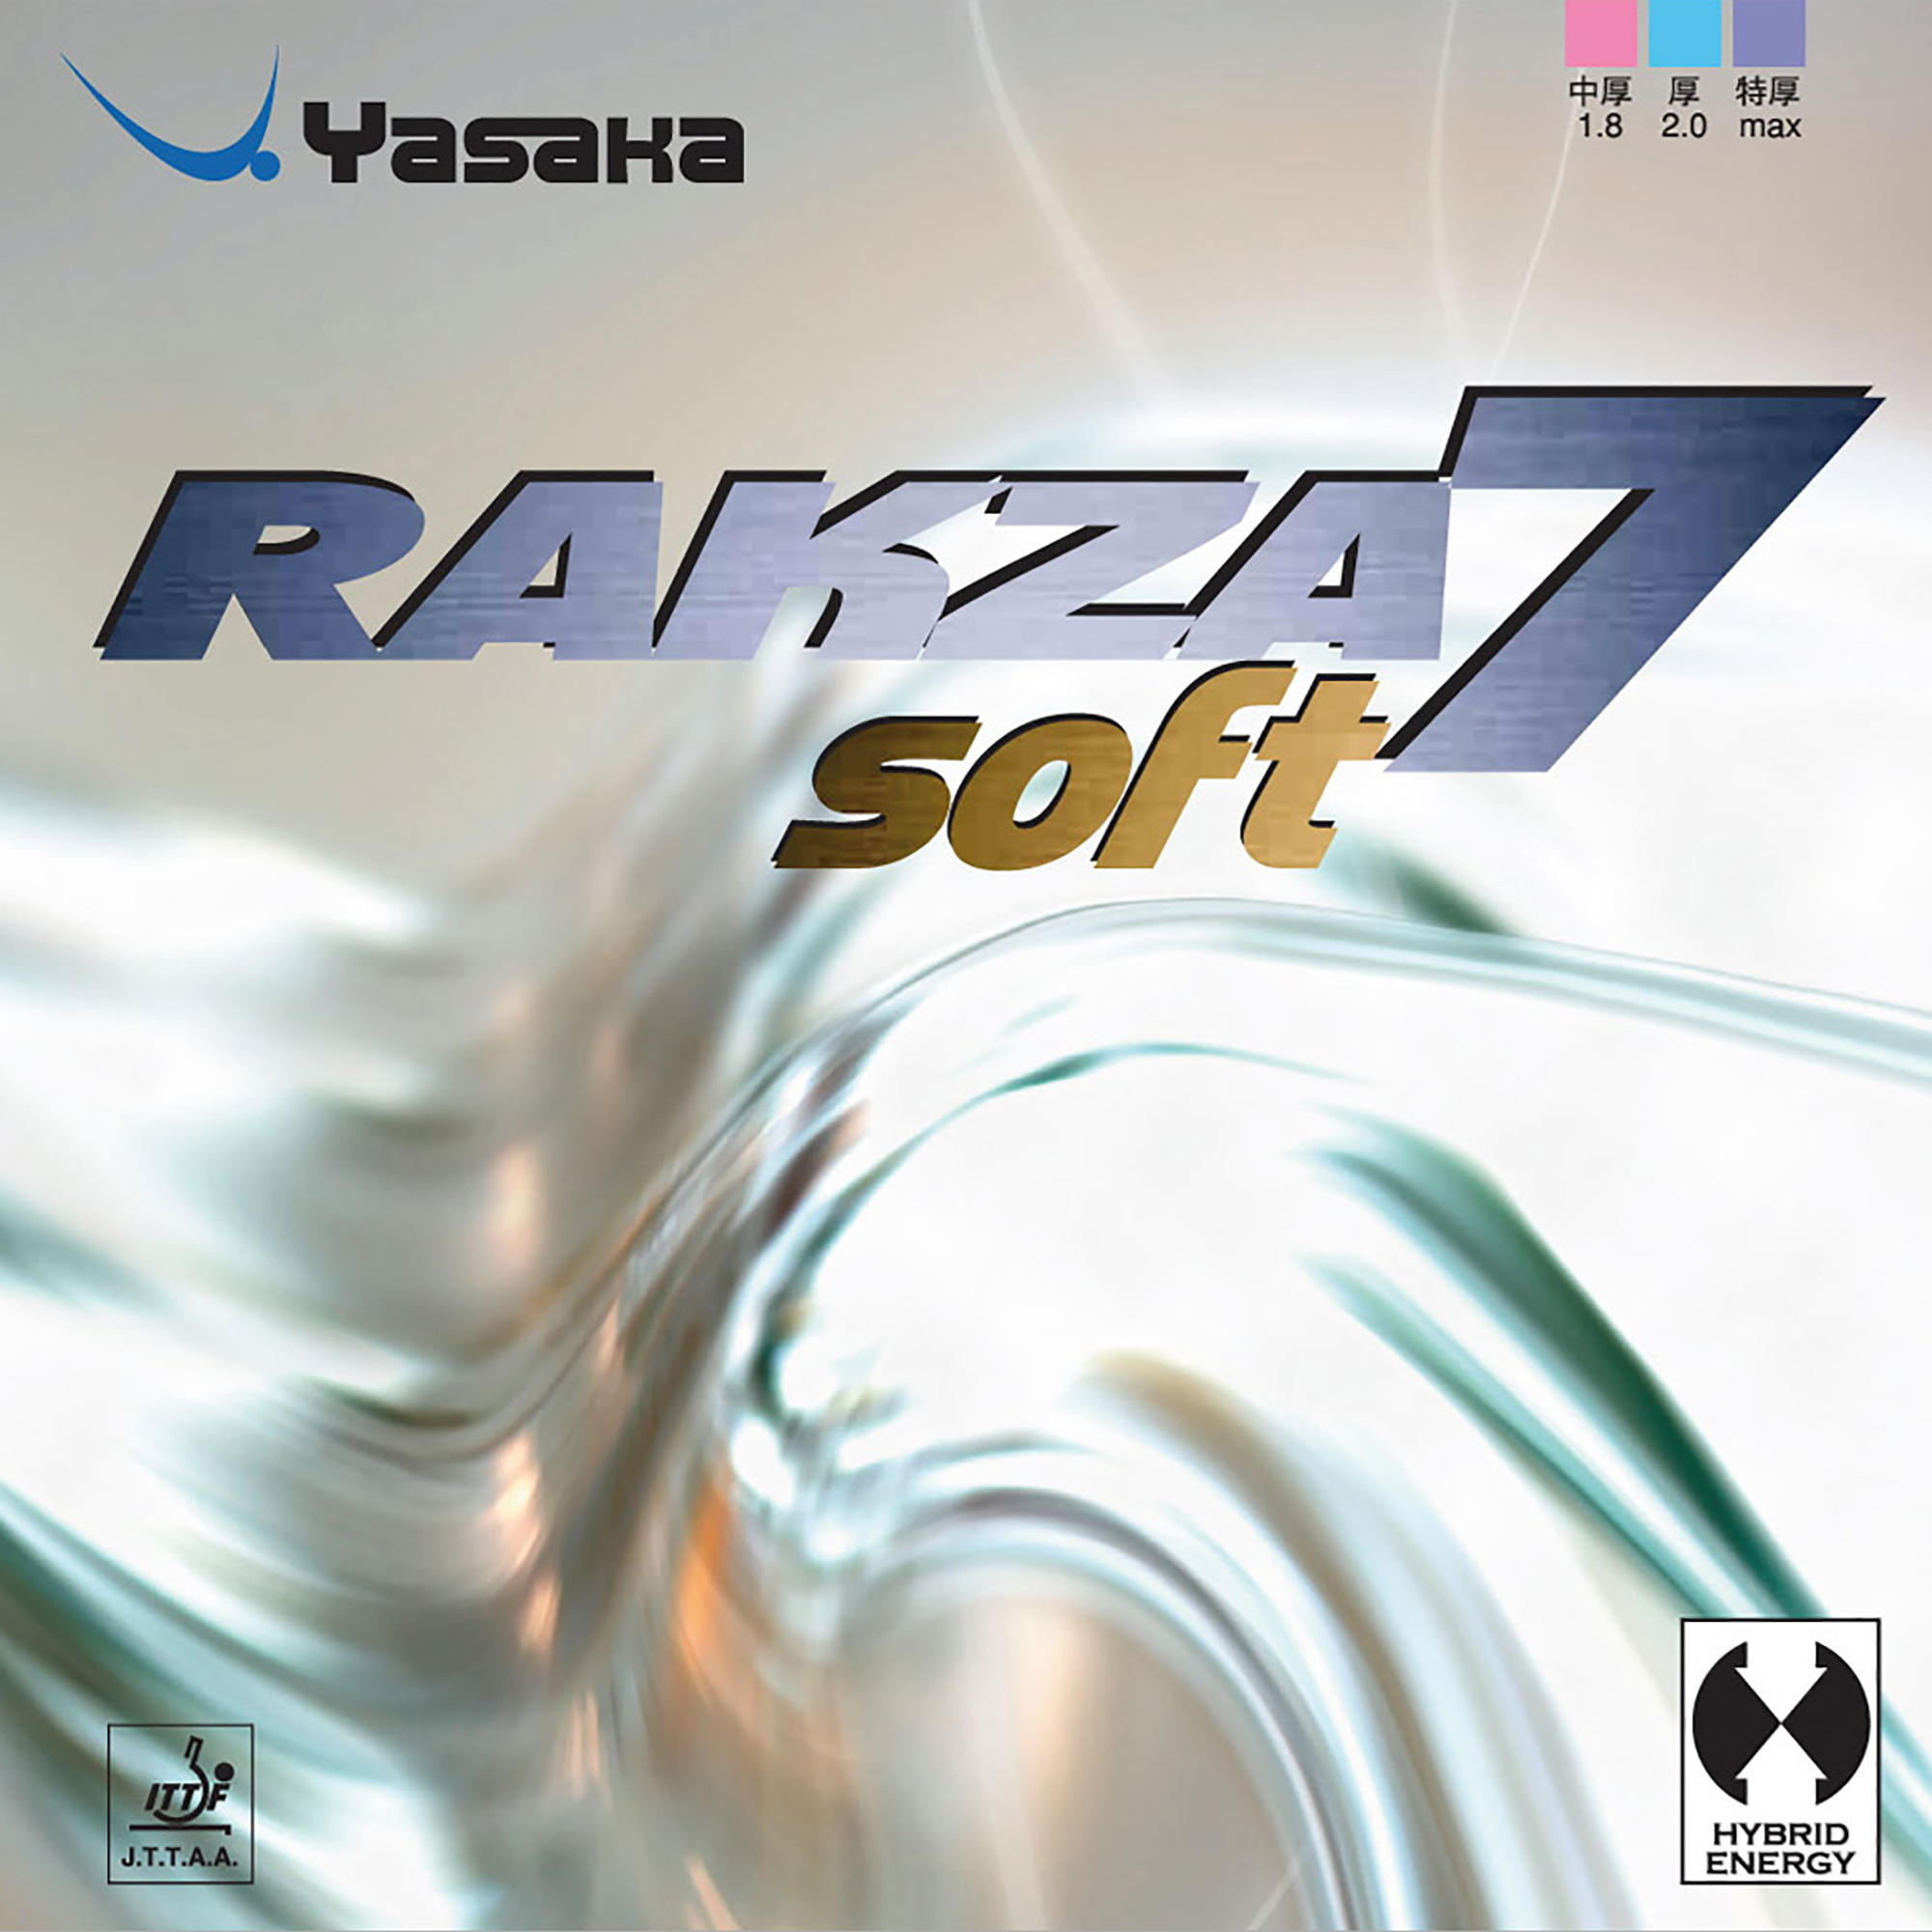 Față Paletă Tenis de Masă Rakza 7 Soft La Oferta Online decathlon imagine La Oferta Online